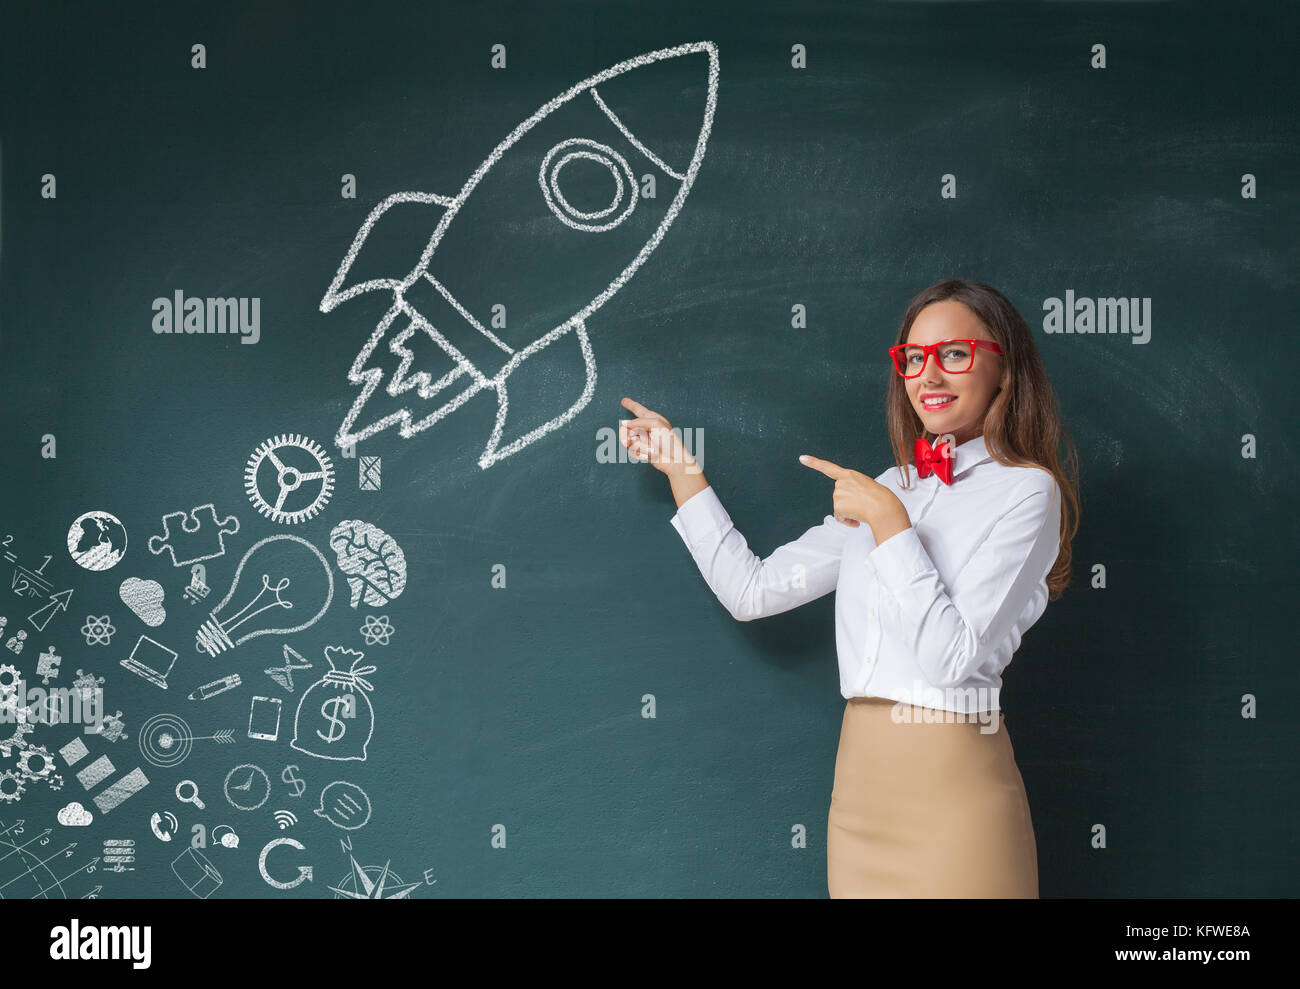 Jeune femme montrer signe de lancement de fusées on chalkboard Banque D'Images